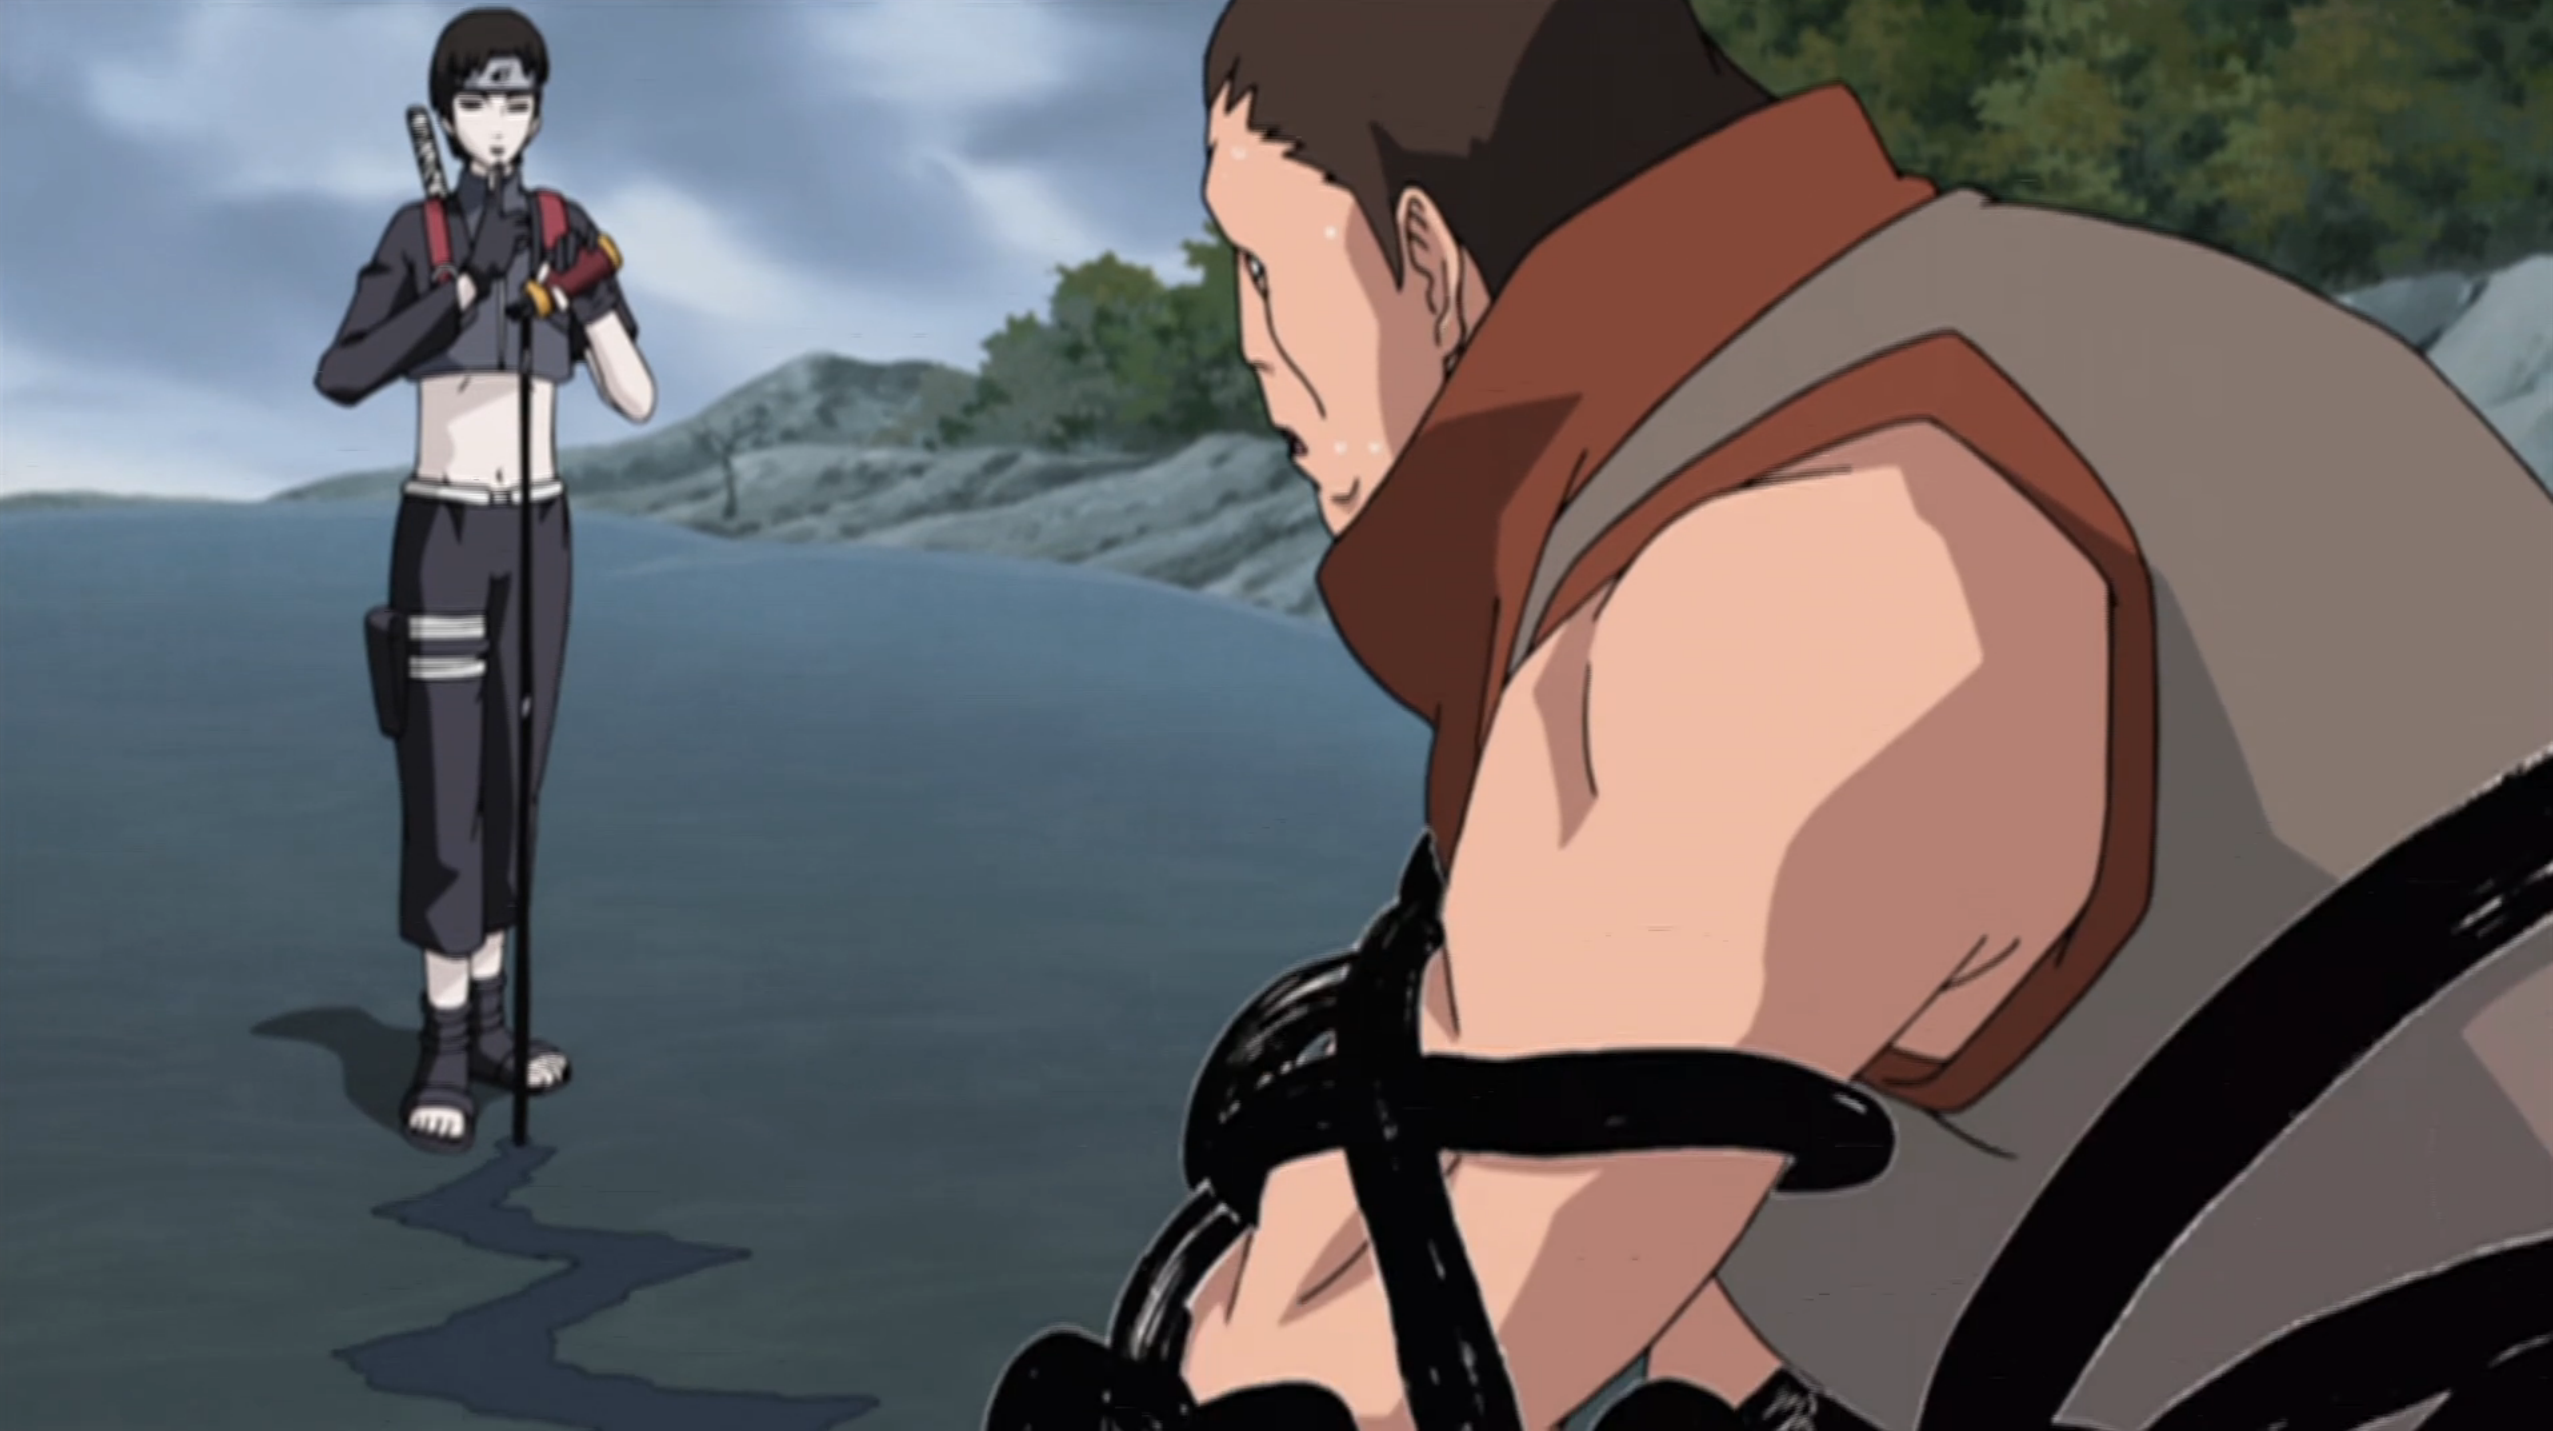 NARUTO VS KOBUTO GUREN AND SAVE YUKIMARU'S LIFE, By Naruto shippuden